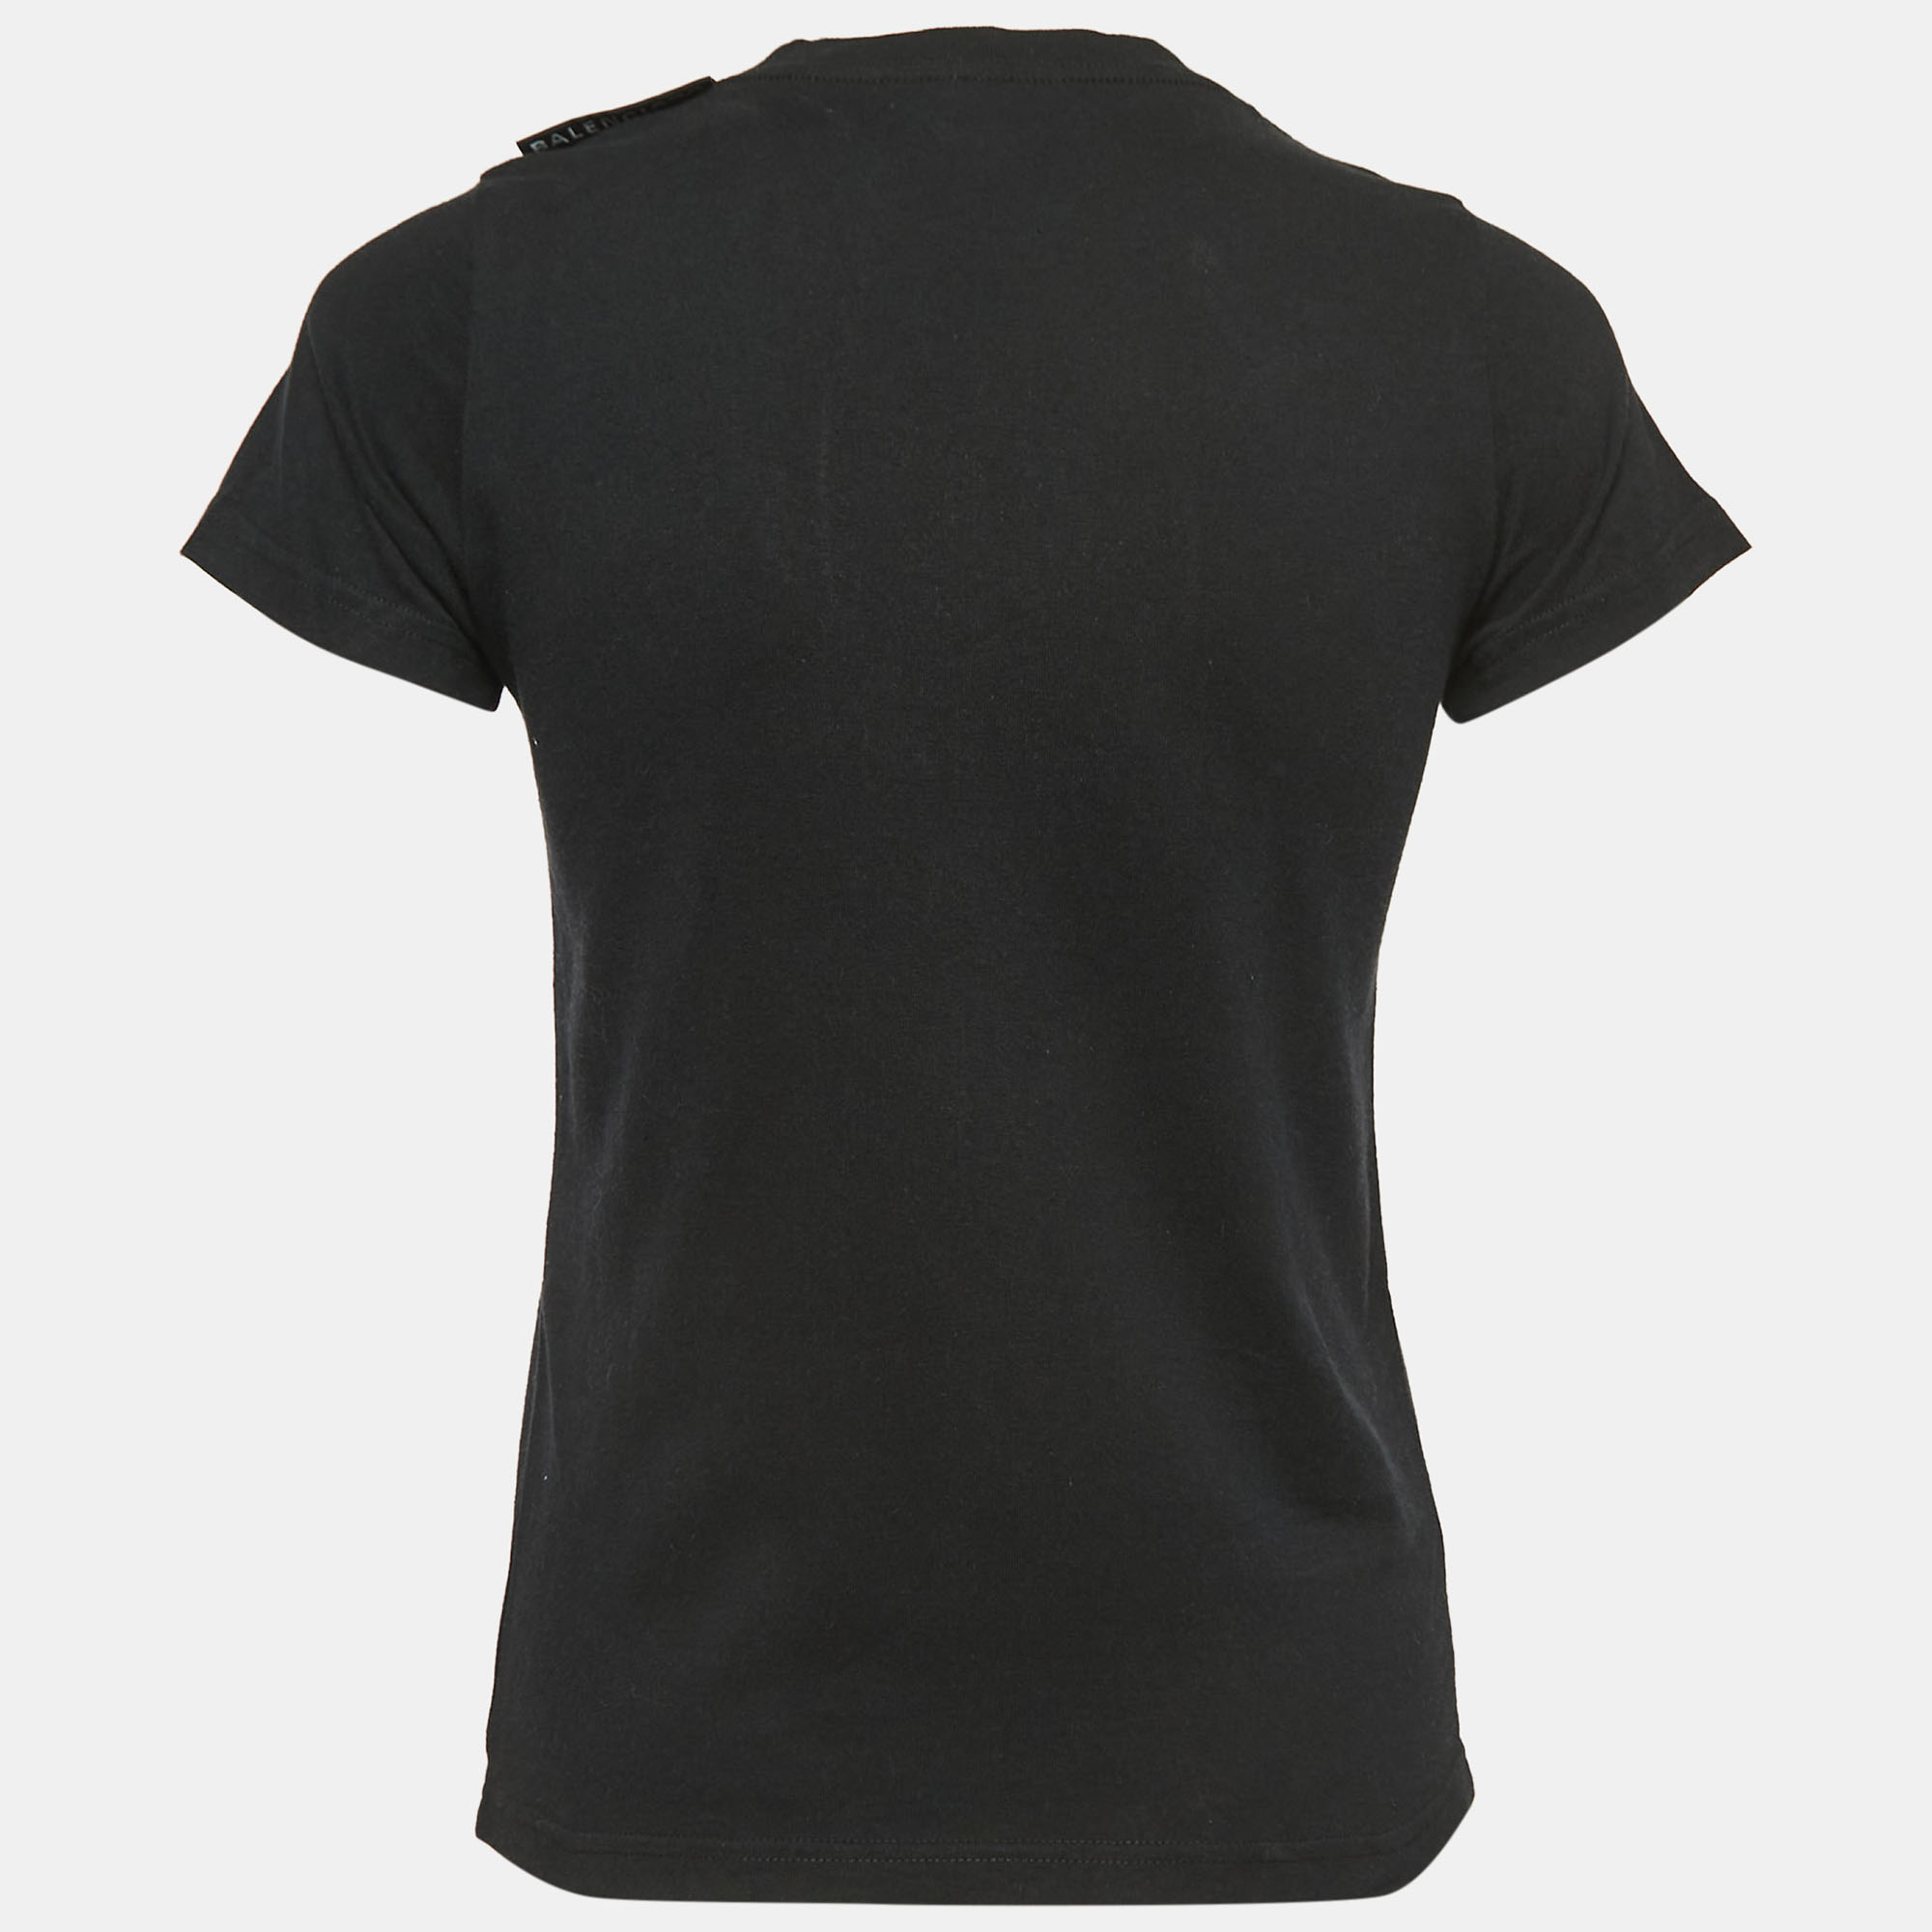 

Balenciaga Black Cotton Crew Neck Half Sleeve T-Shirt